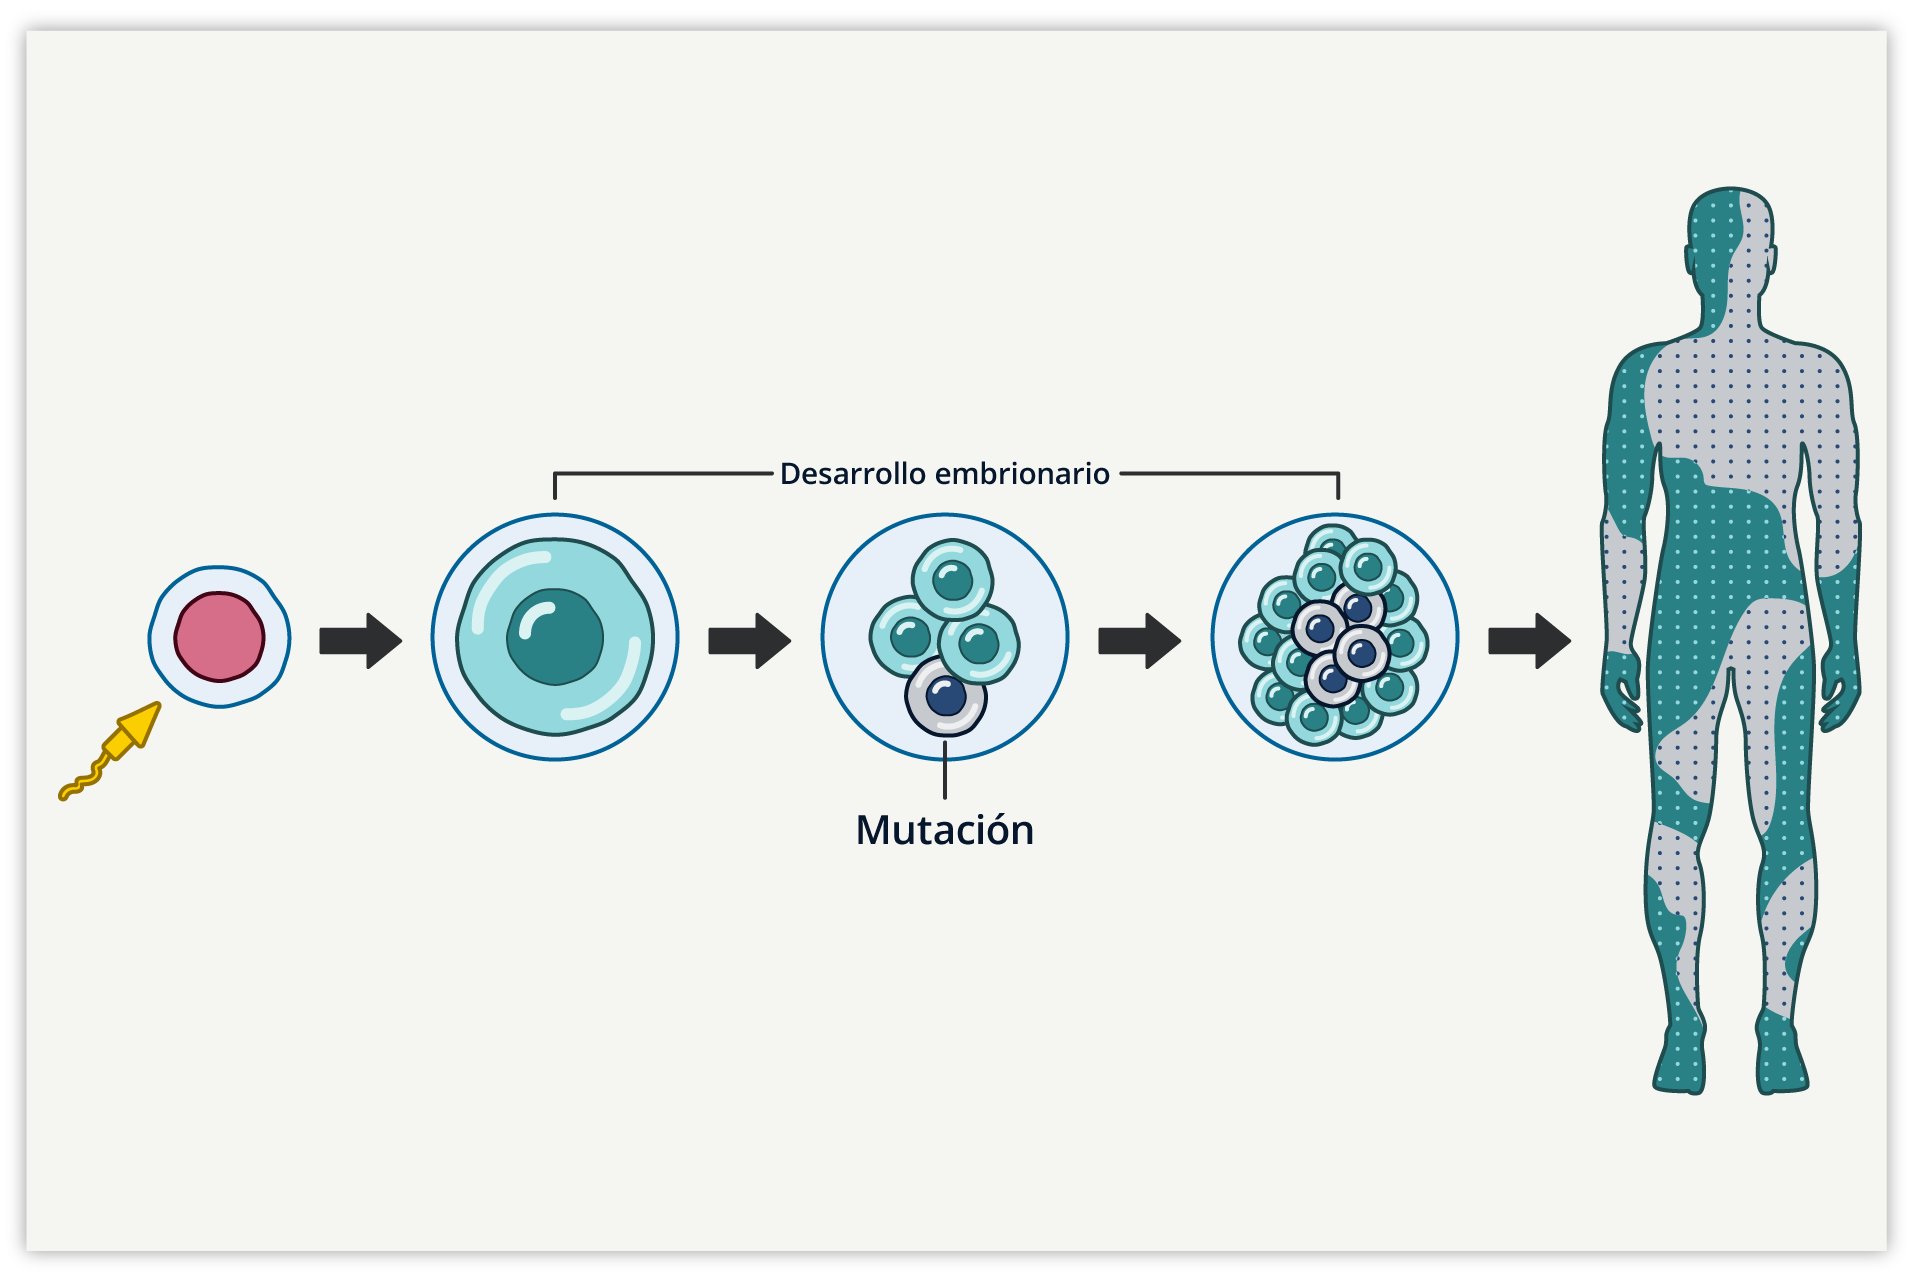 Las mutaciones en mosaico en los embriones podrían causar cáncer más tarde  en la vida - NCI